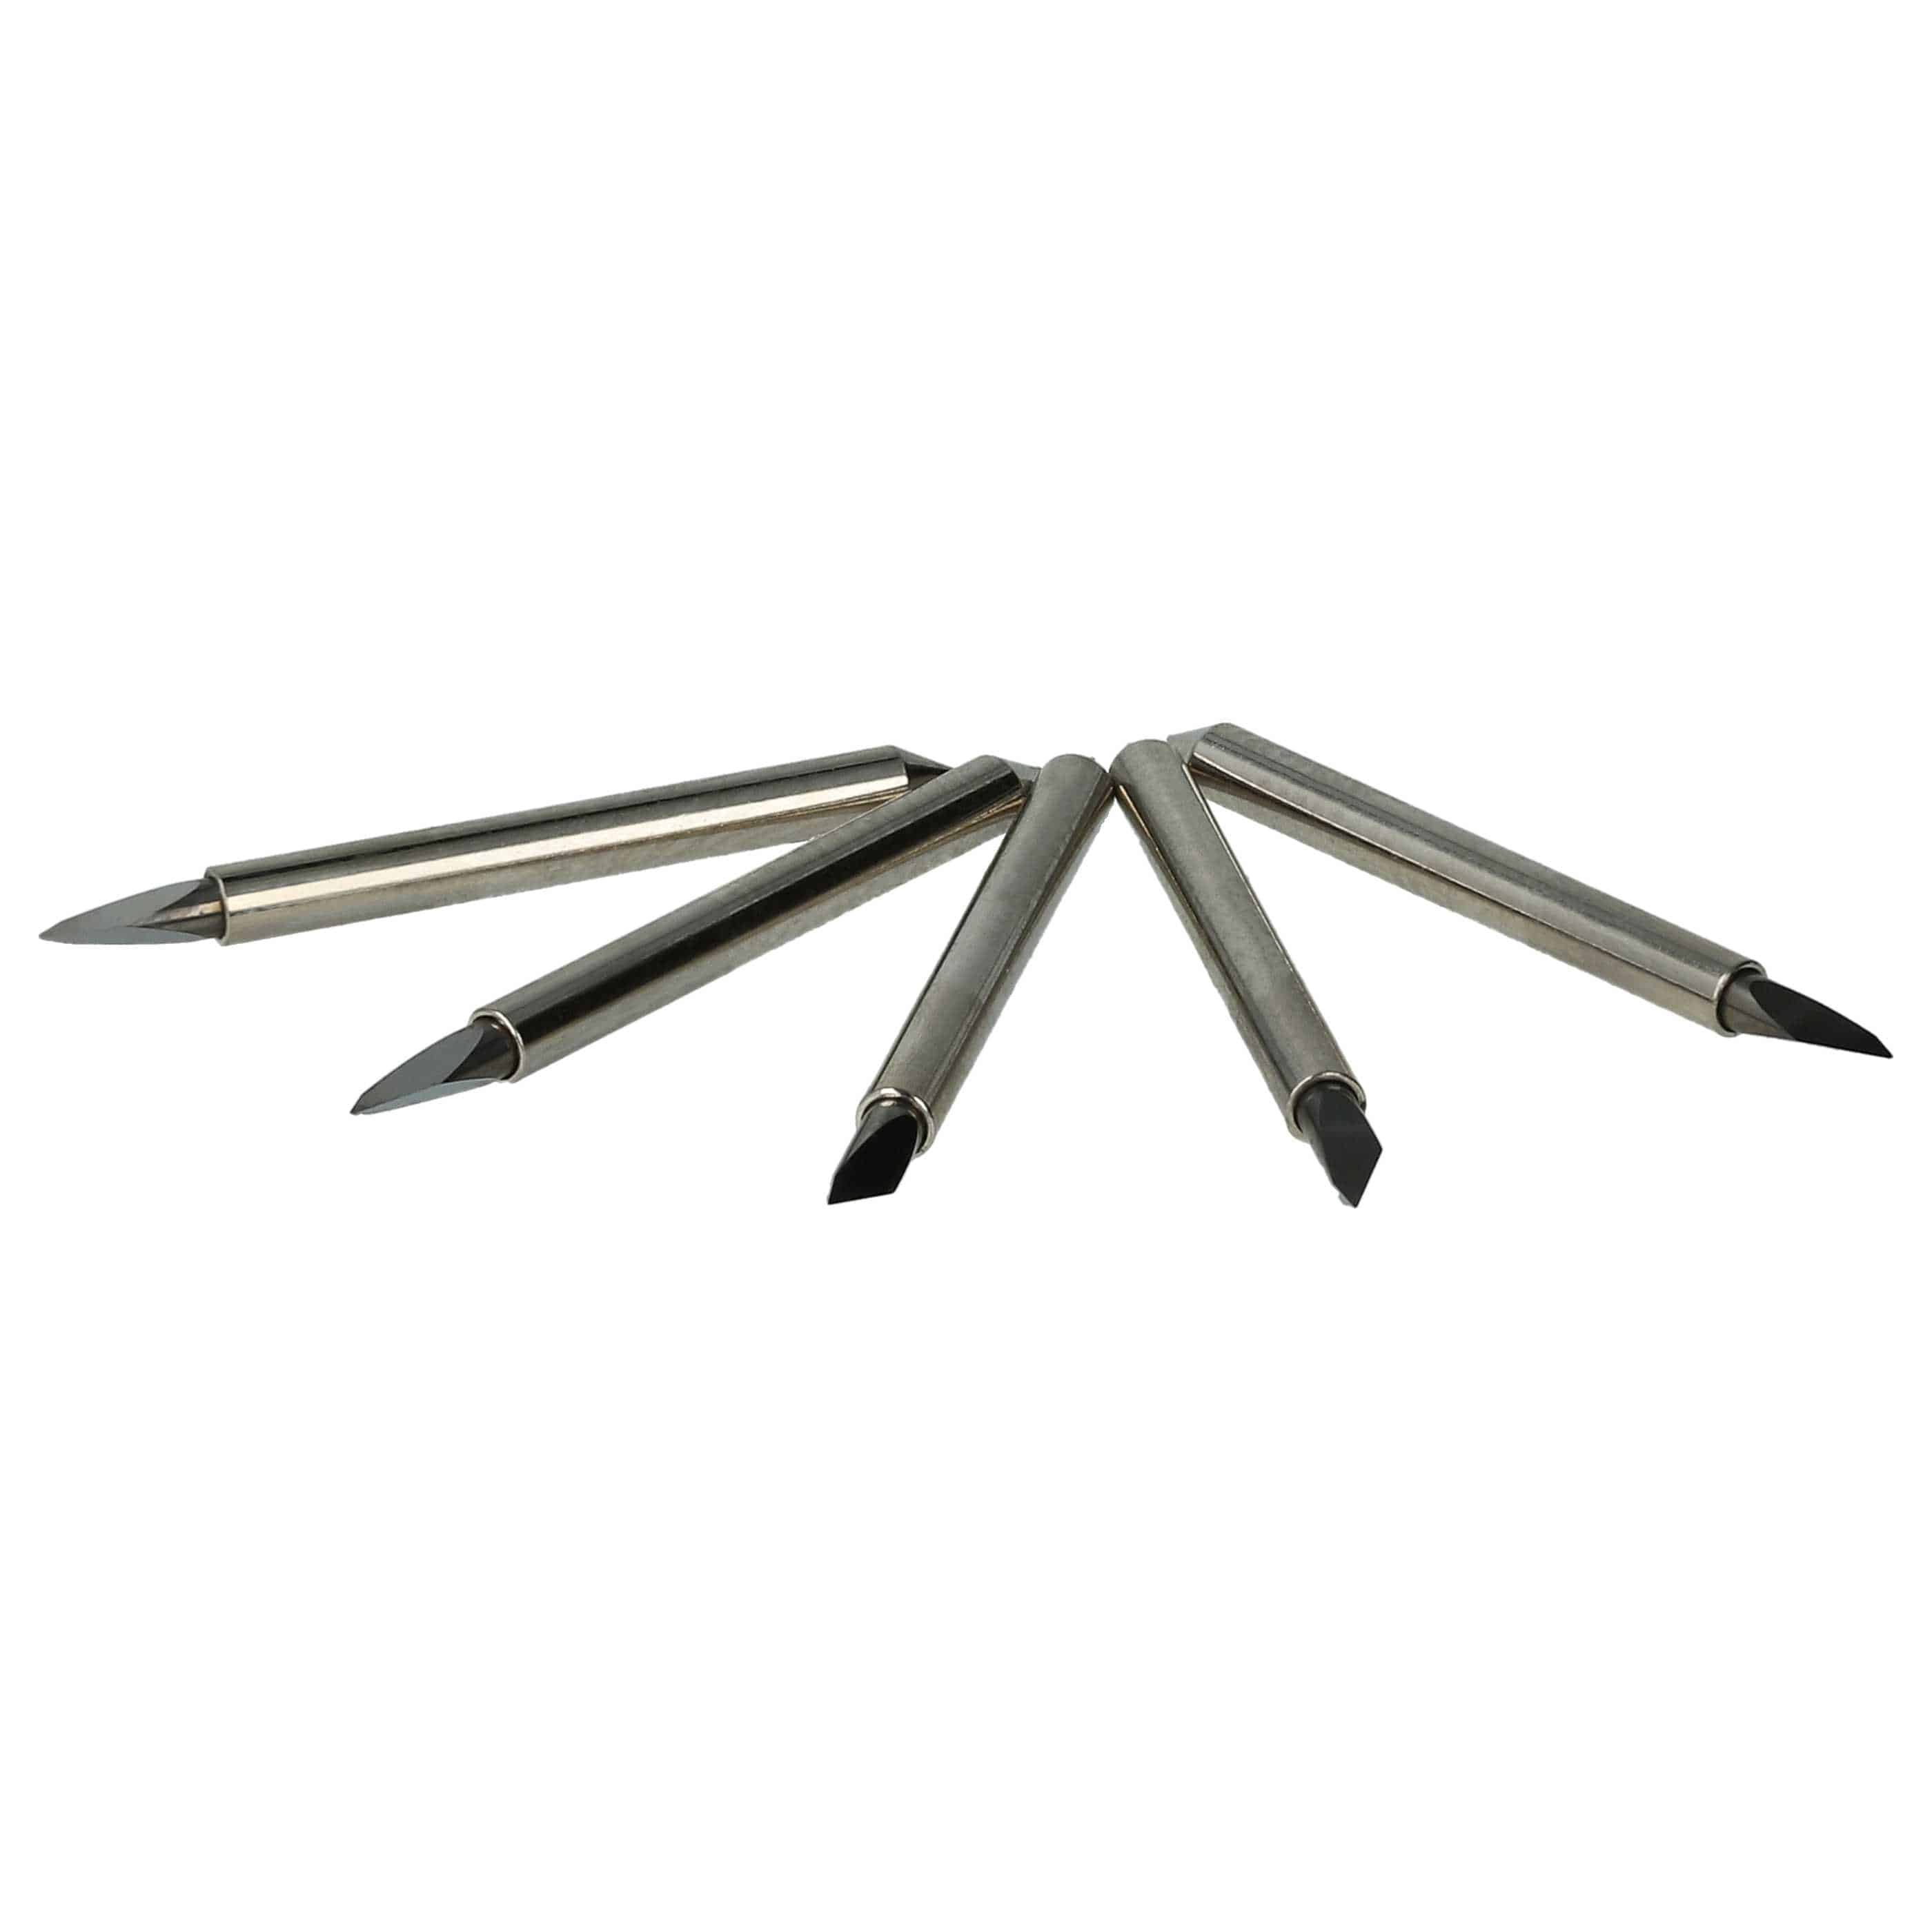 5x Plotter Blade suitable for CSR Ecom-2 Renker Cutting Plotter etc.